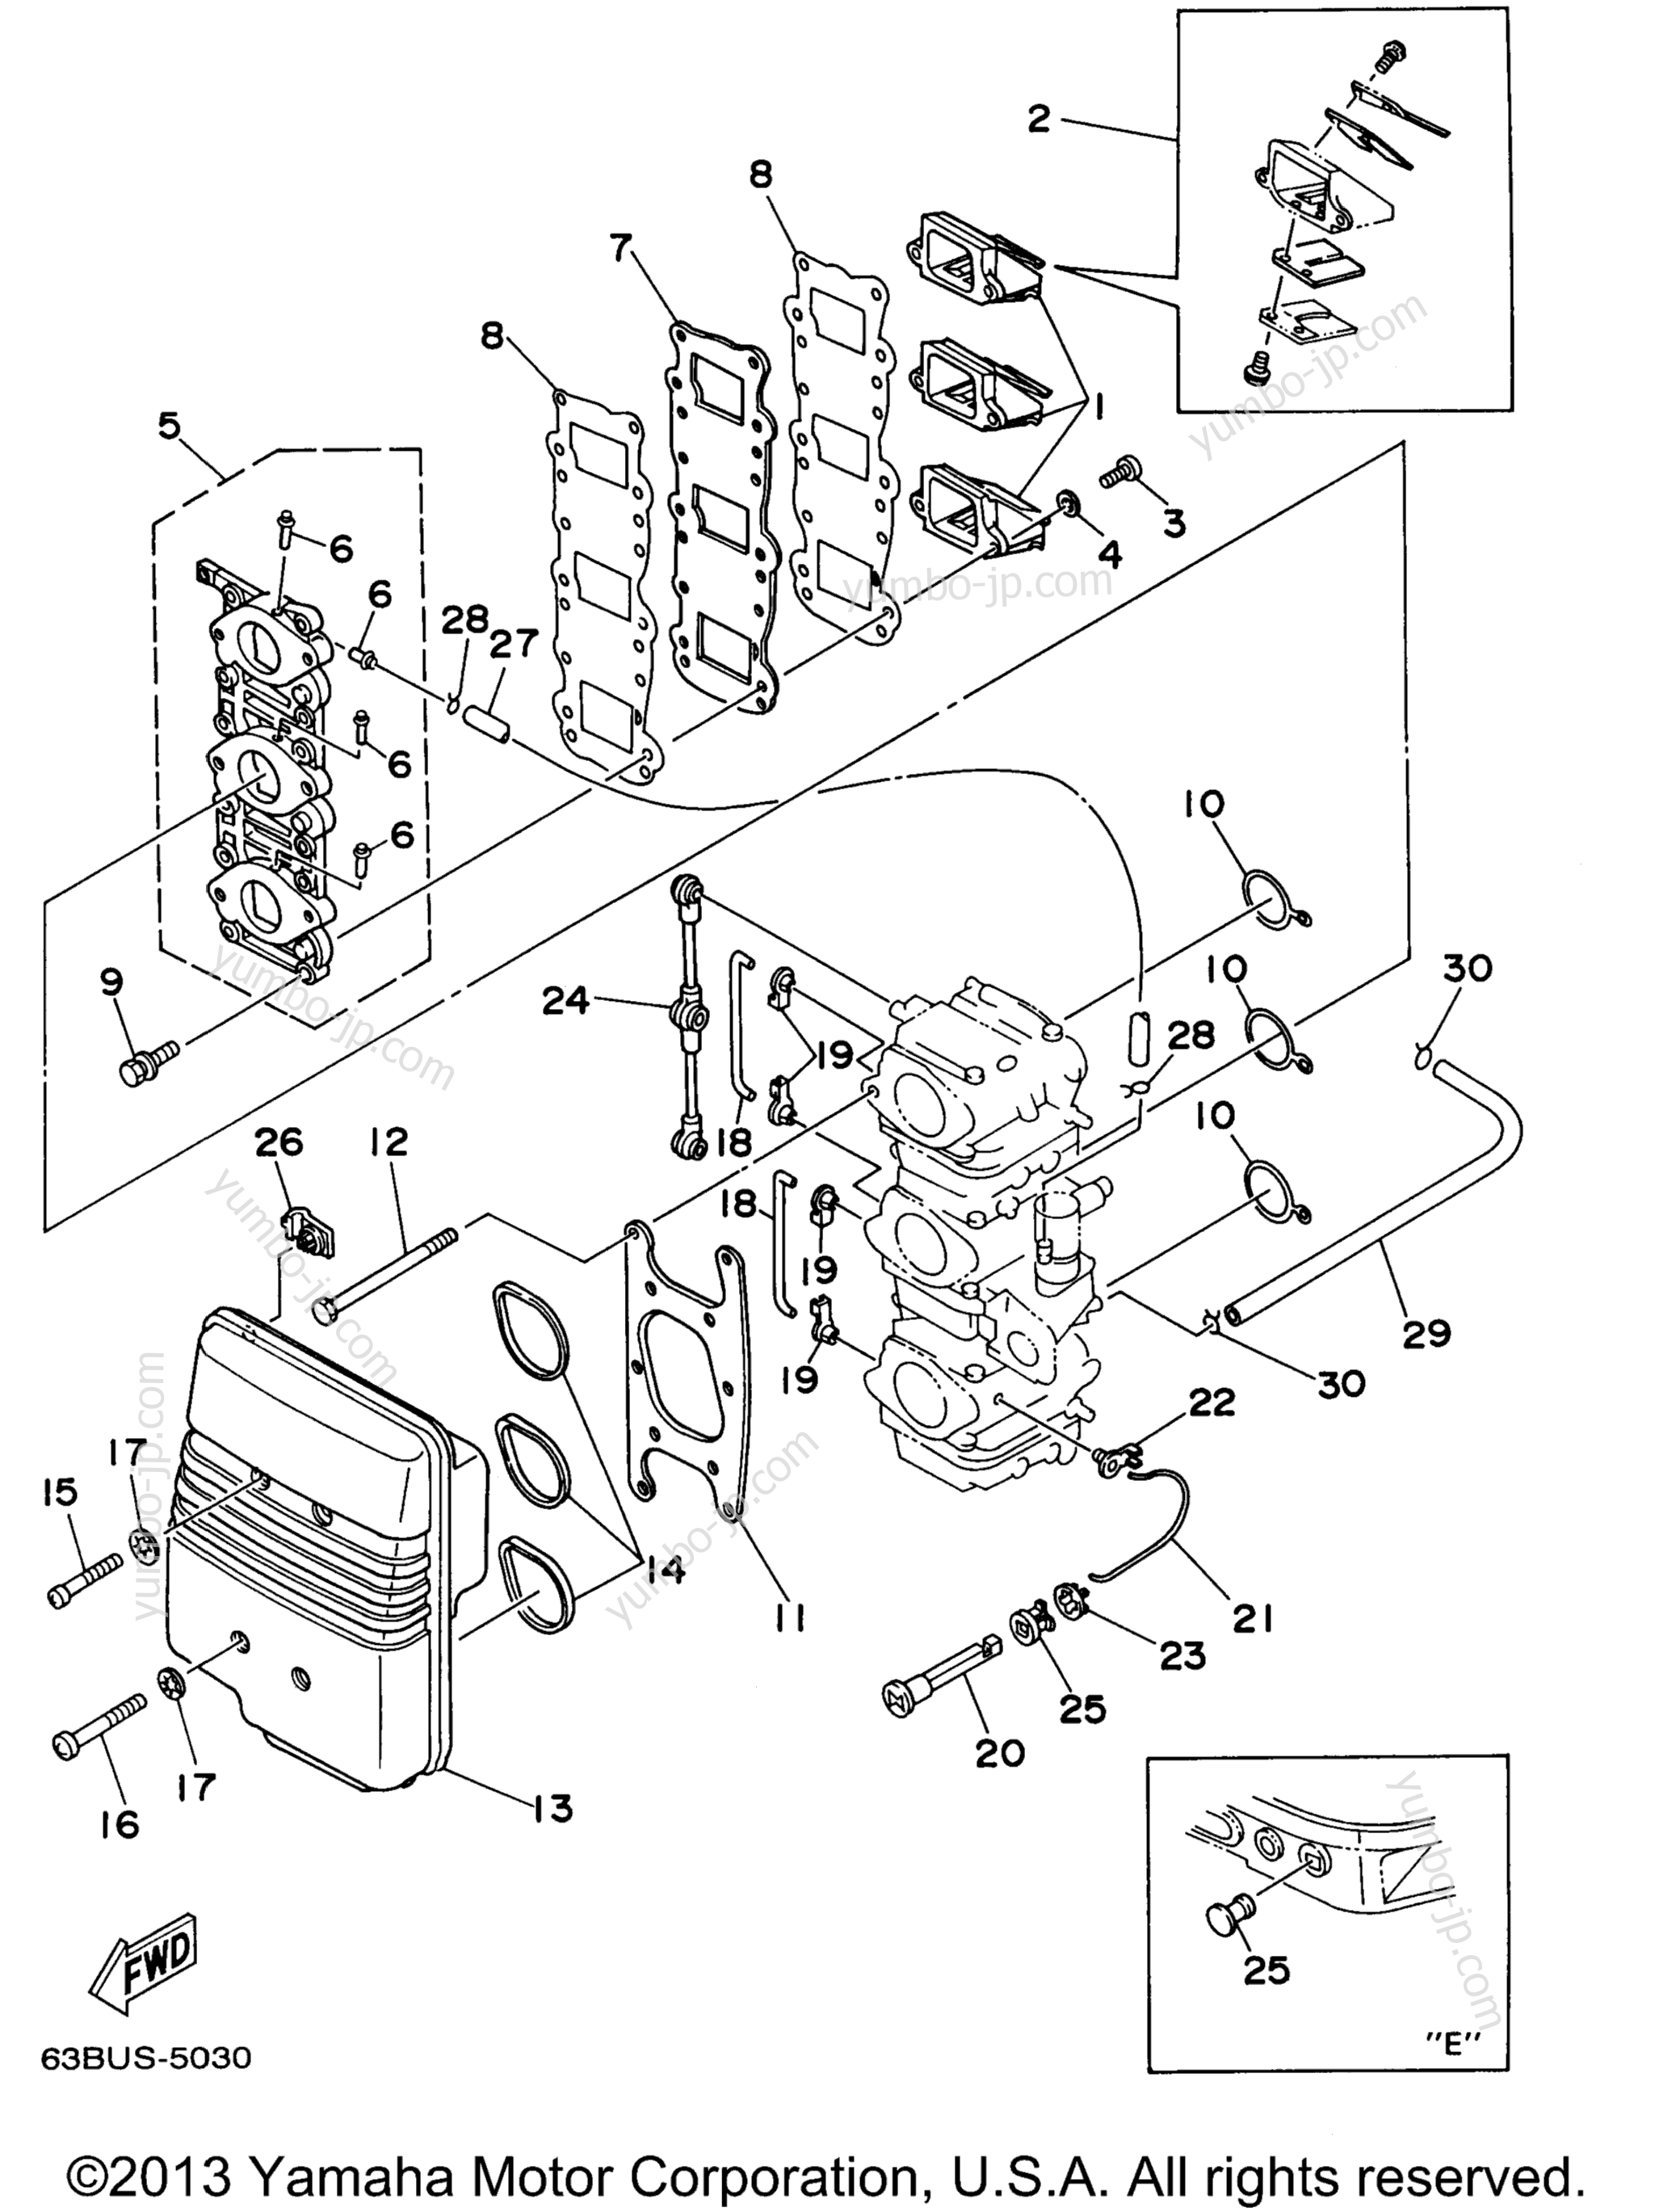 Intake для лодочных моторов YAMAHA P40EJRW_THLW (40EJRW) 1998 г.